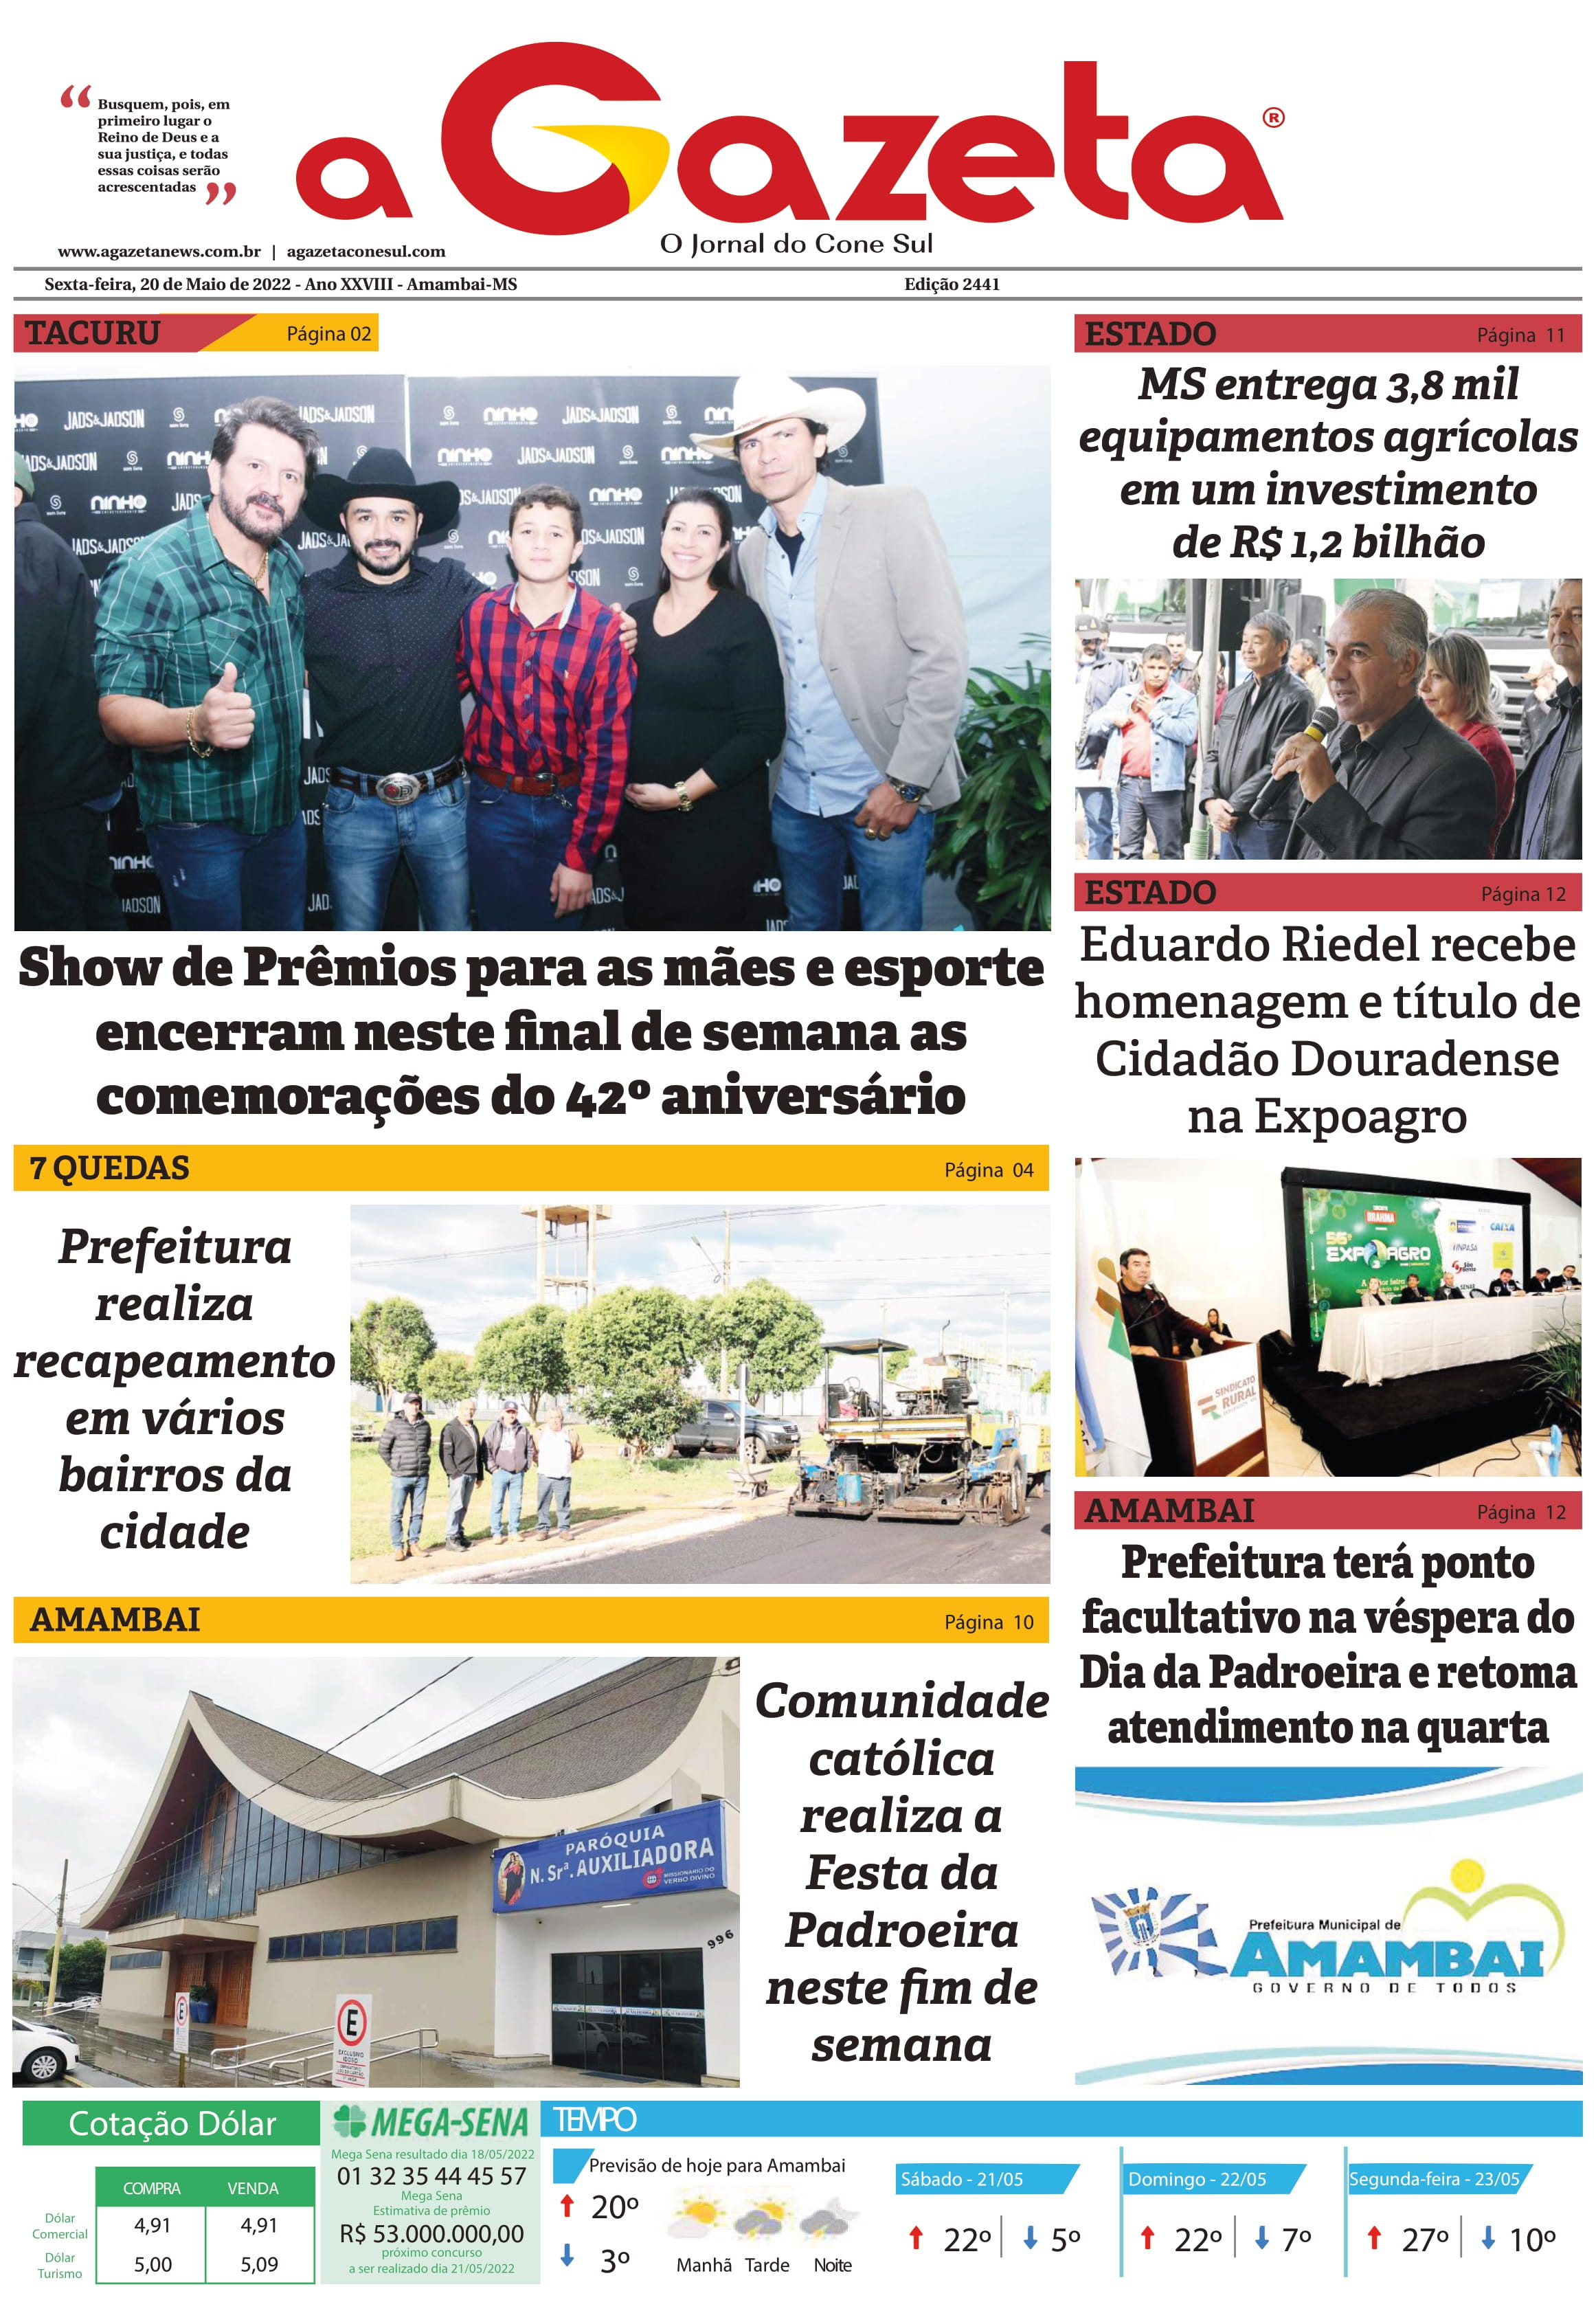 Confira a edição digital do Impresso Jornal A Gazeta desta sexta-feira, dia 20